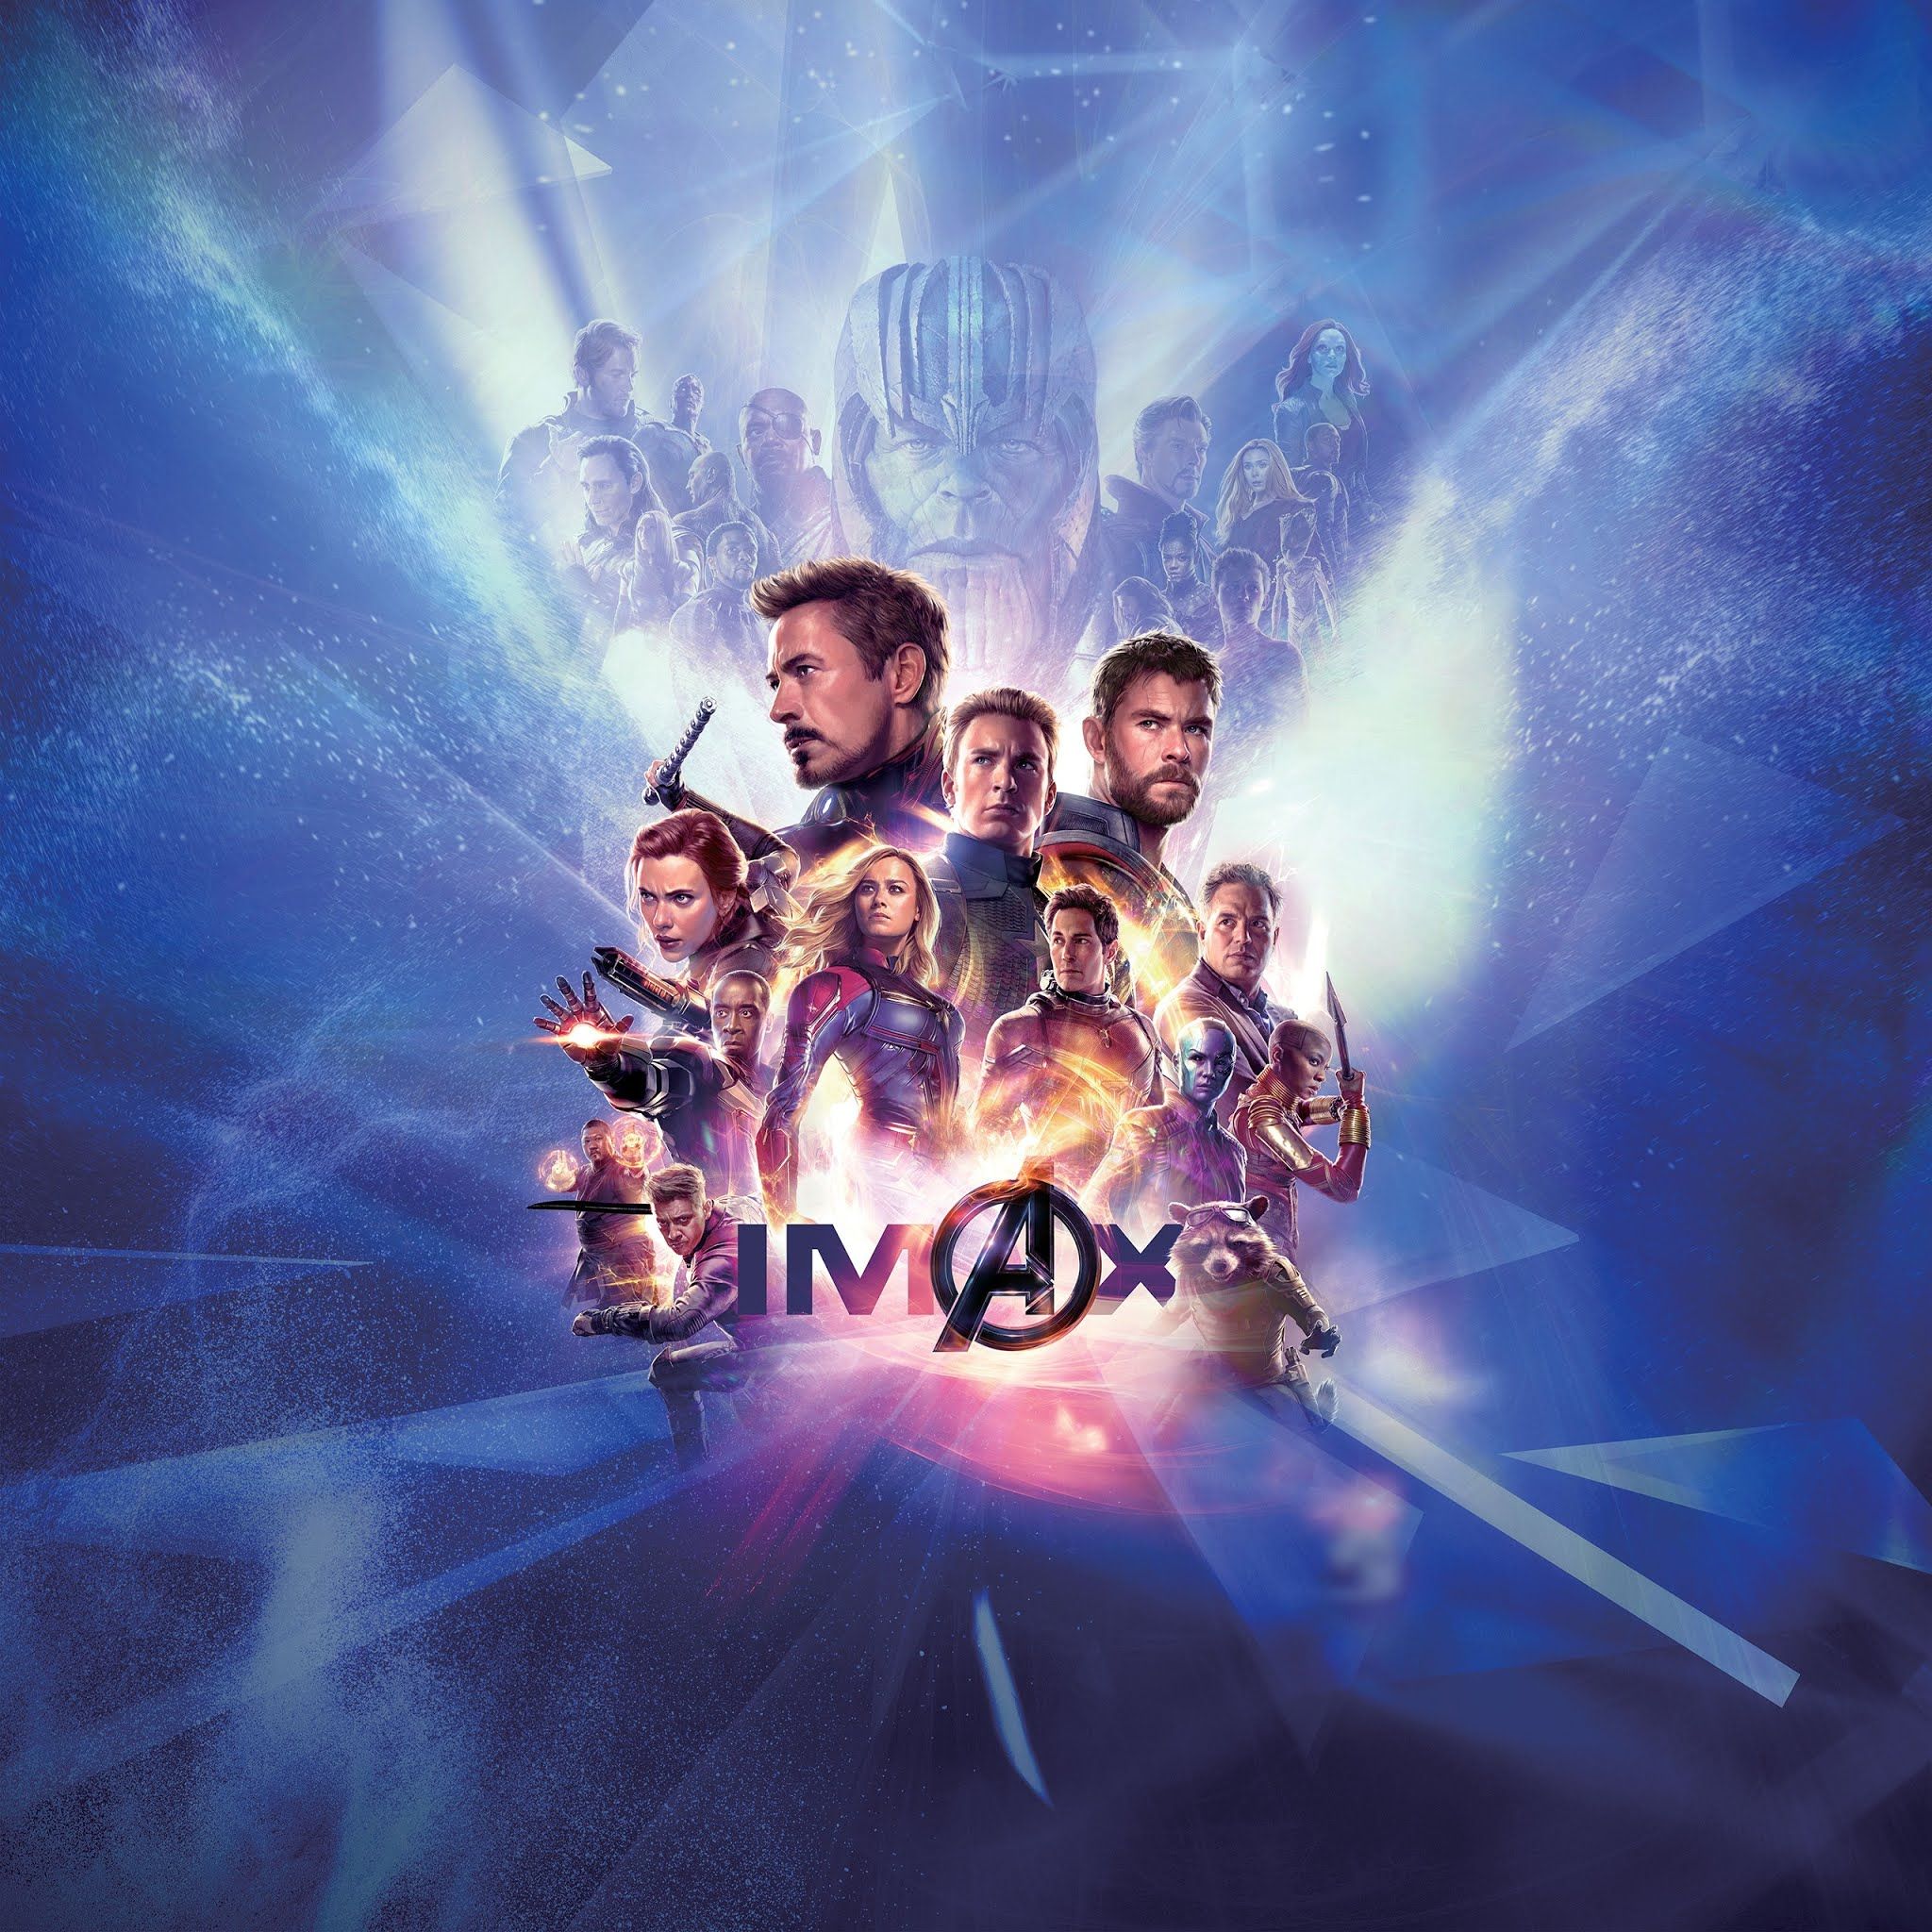 Avengers Endgame IMAX Poster 4K